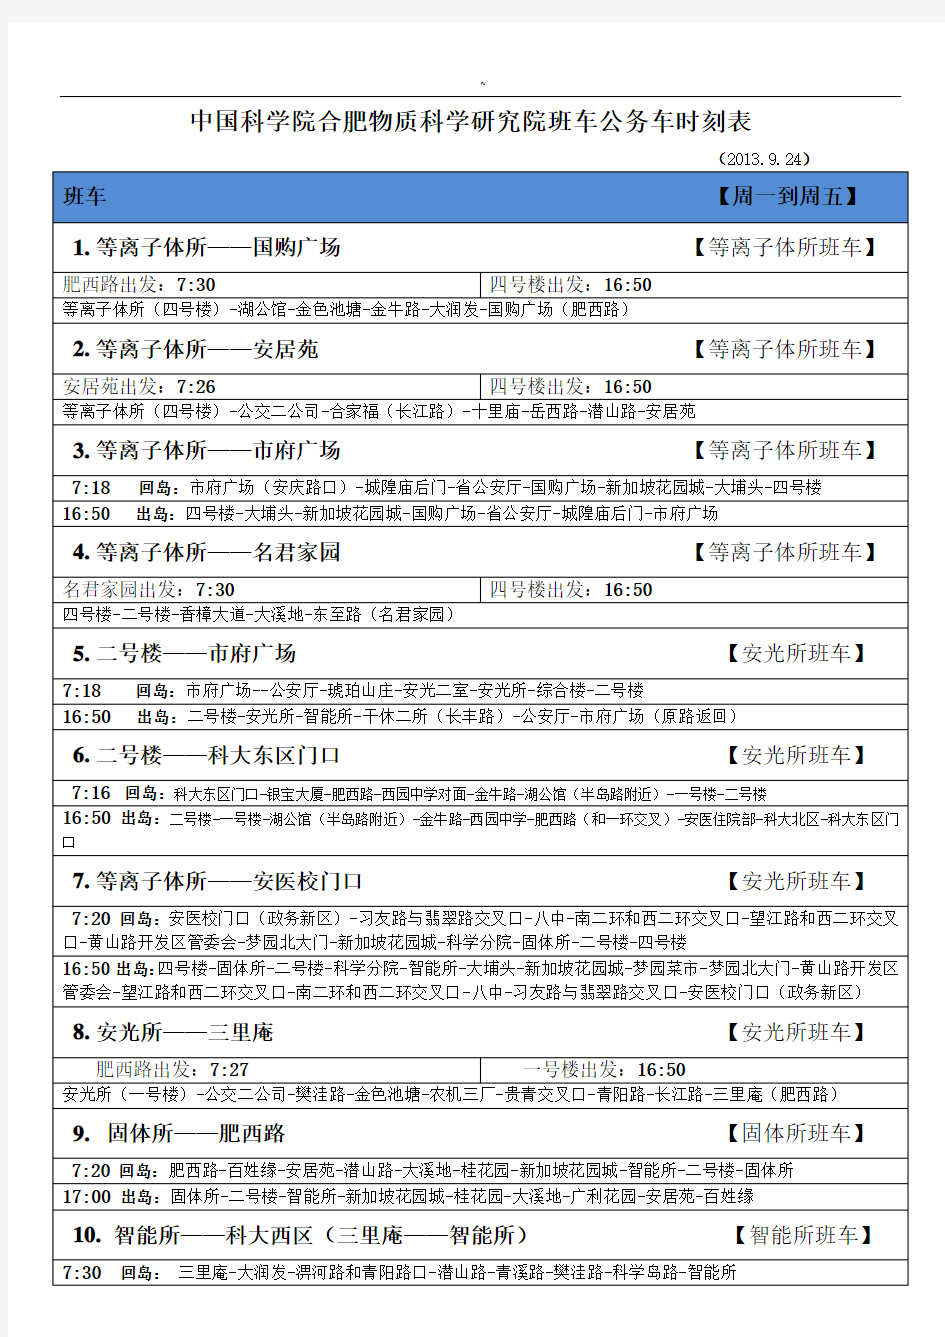 中国科学院合肥物质科学研究院班车公务车时刻表